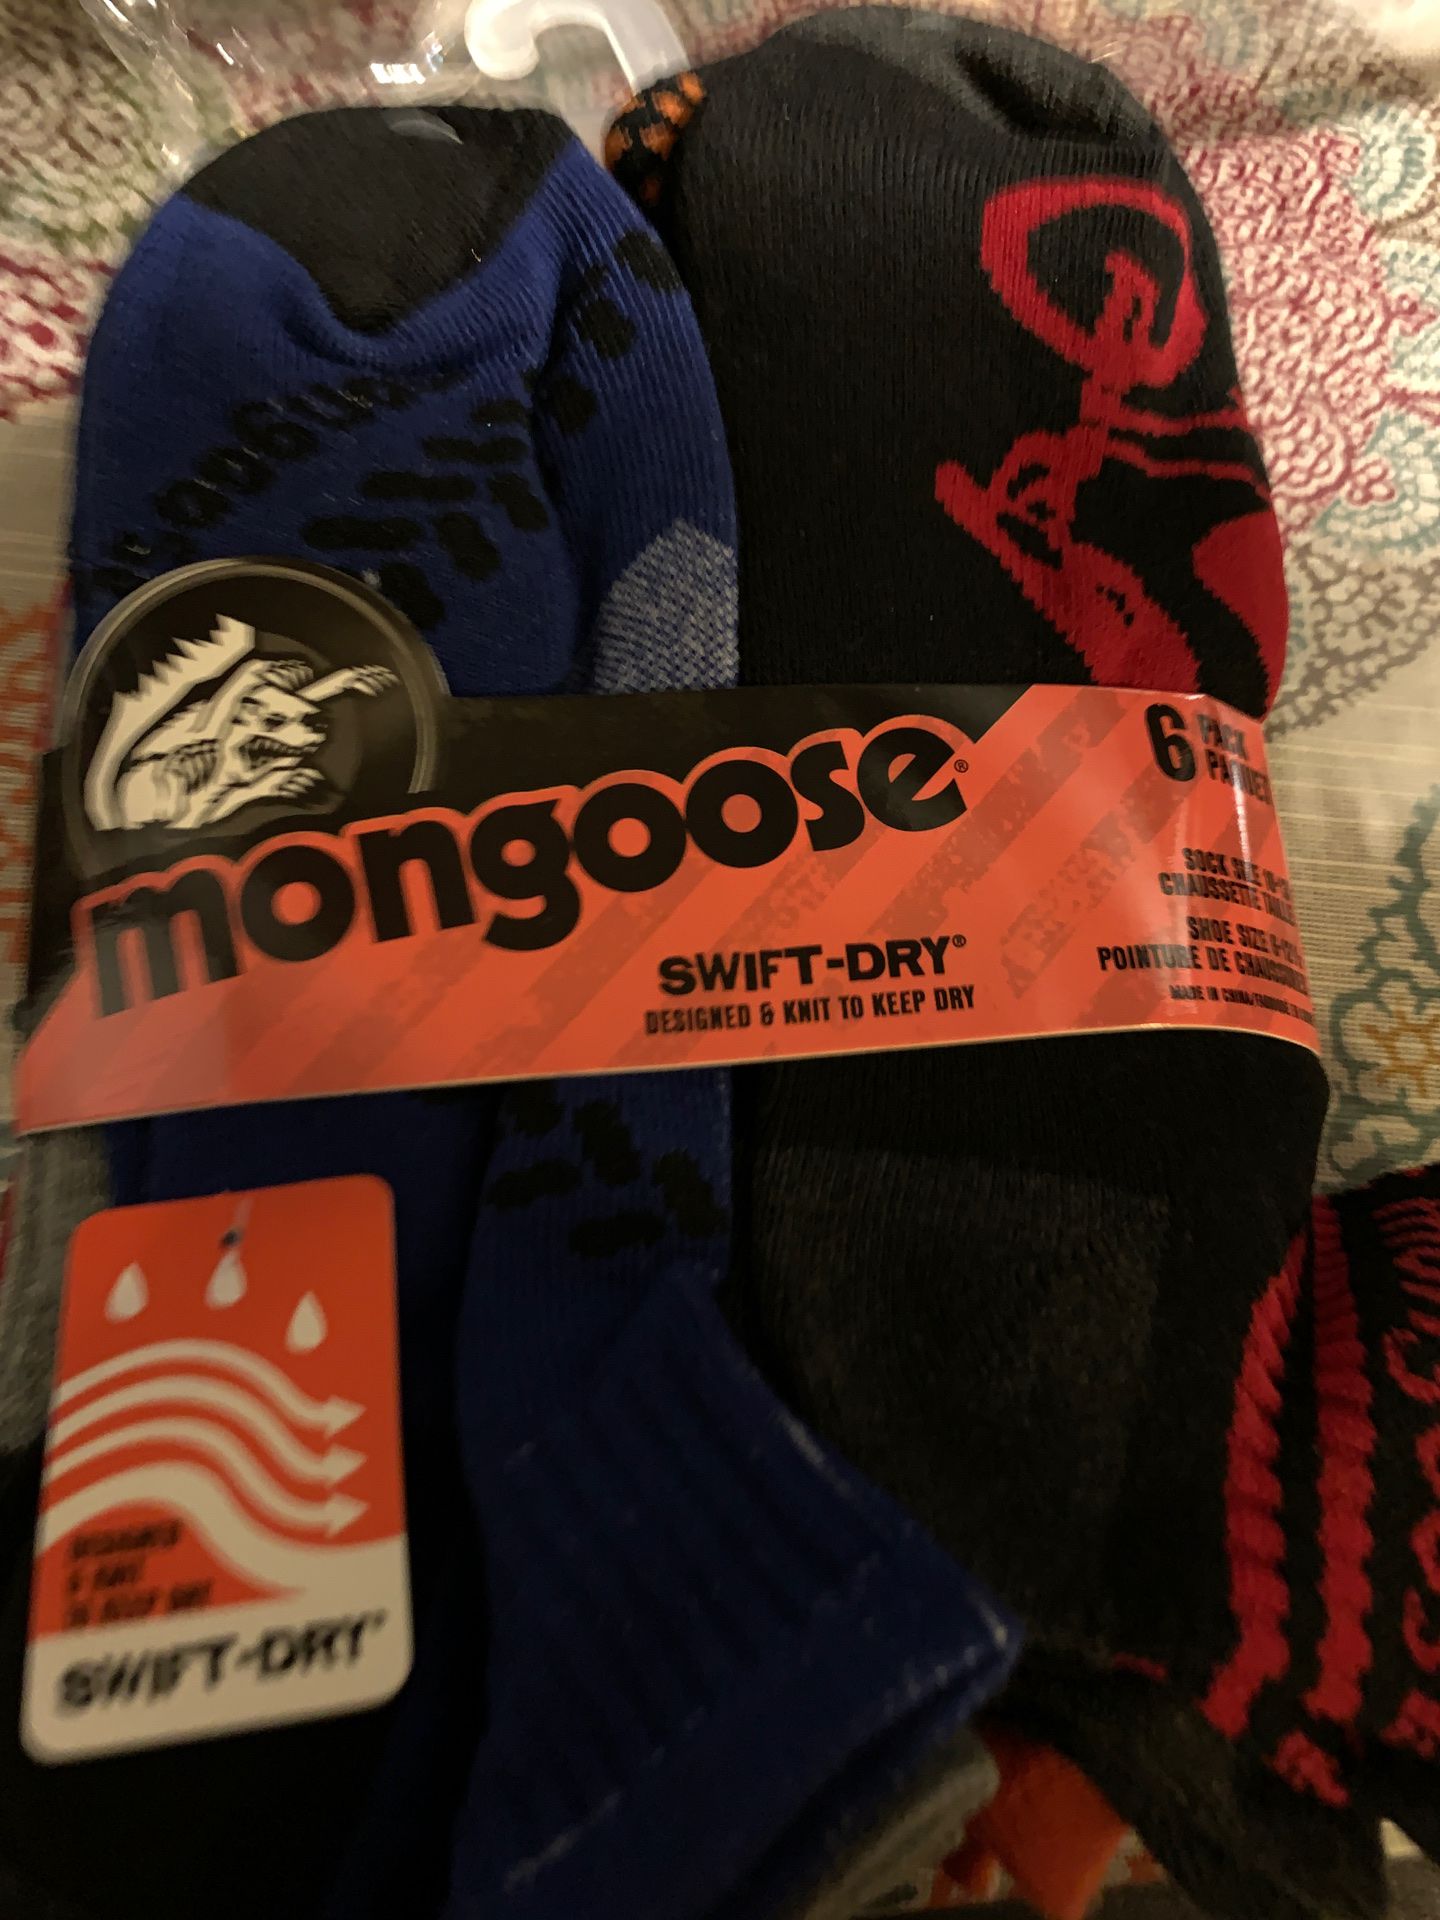 New mongoose swift dry socks!